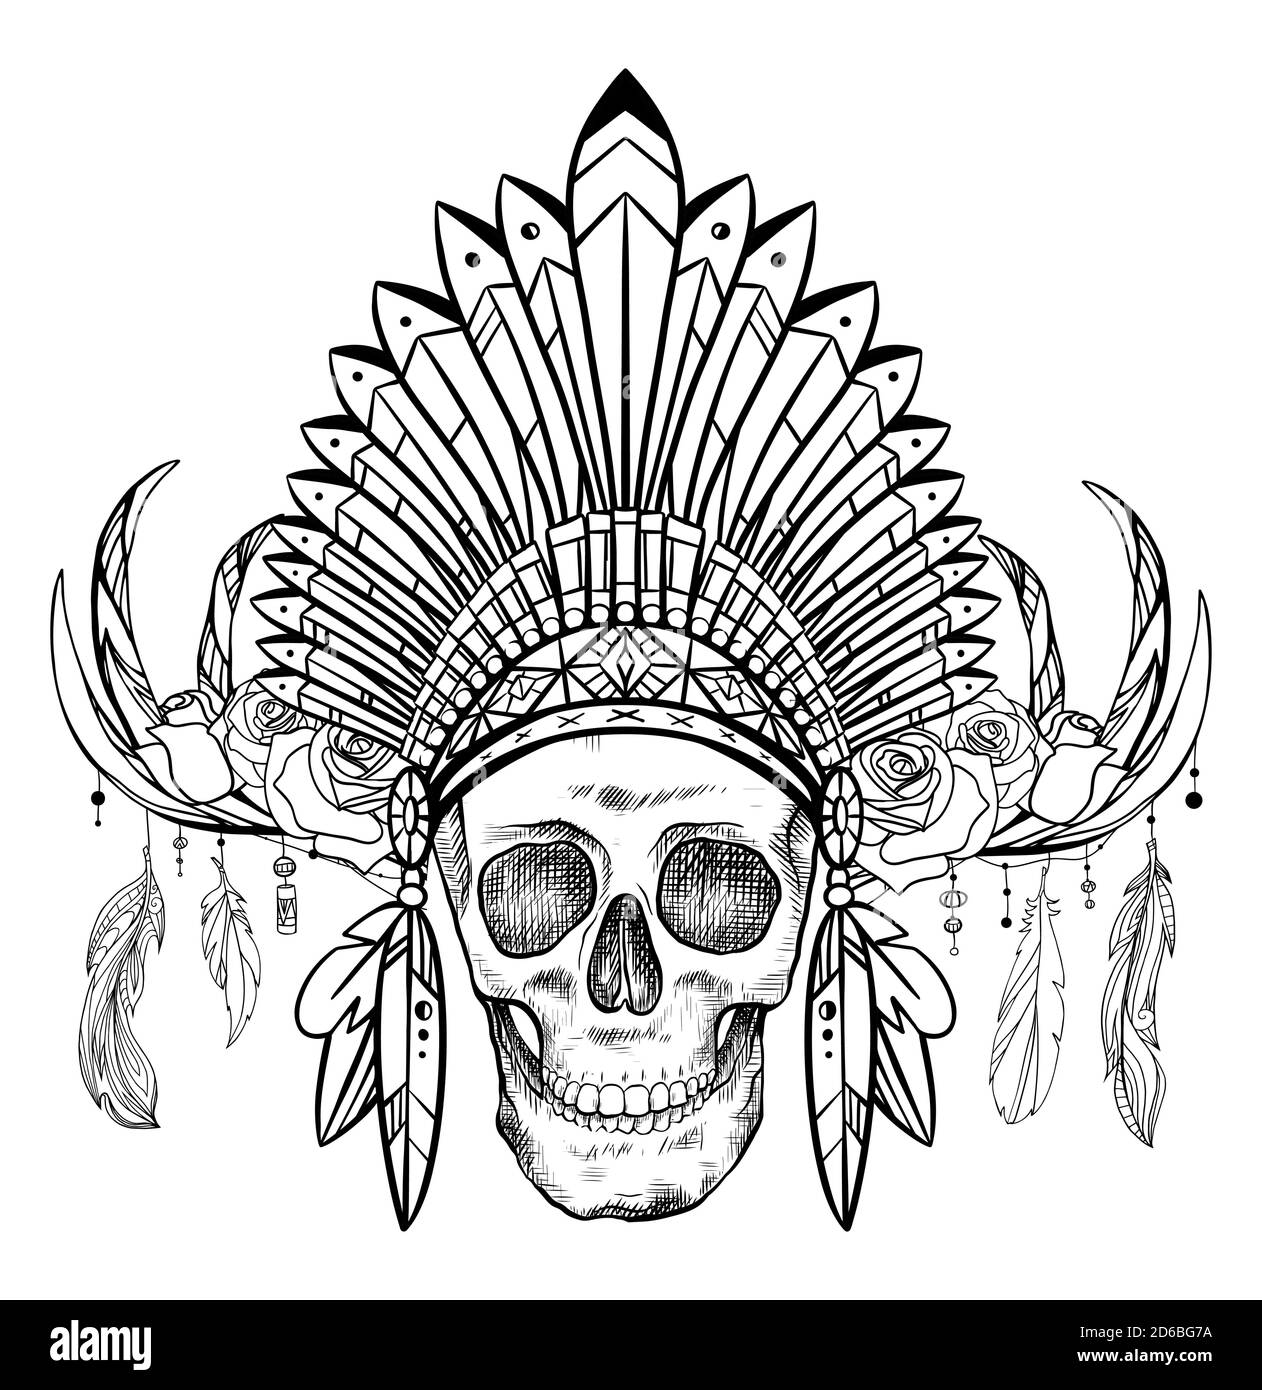 Dessin noir et blanc d'un crâne humain dans un chapeau amérindien avec des cornes de cerf et des roses. Vue avant. Images vectorielles tribales pour tatouages, impression sur Illustration de Vecteur